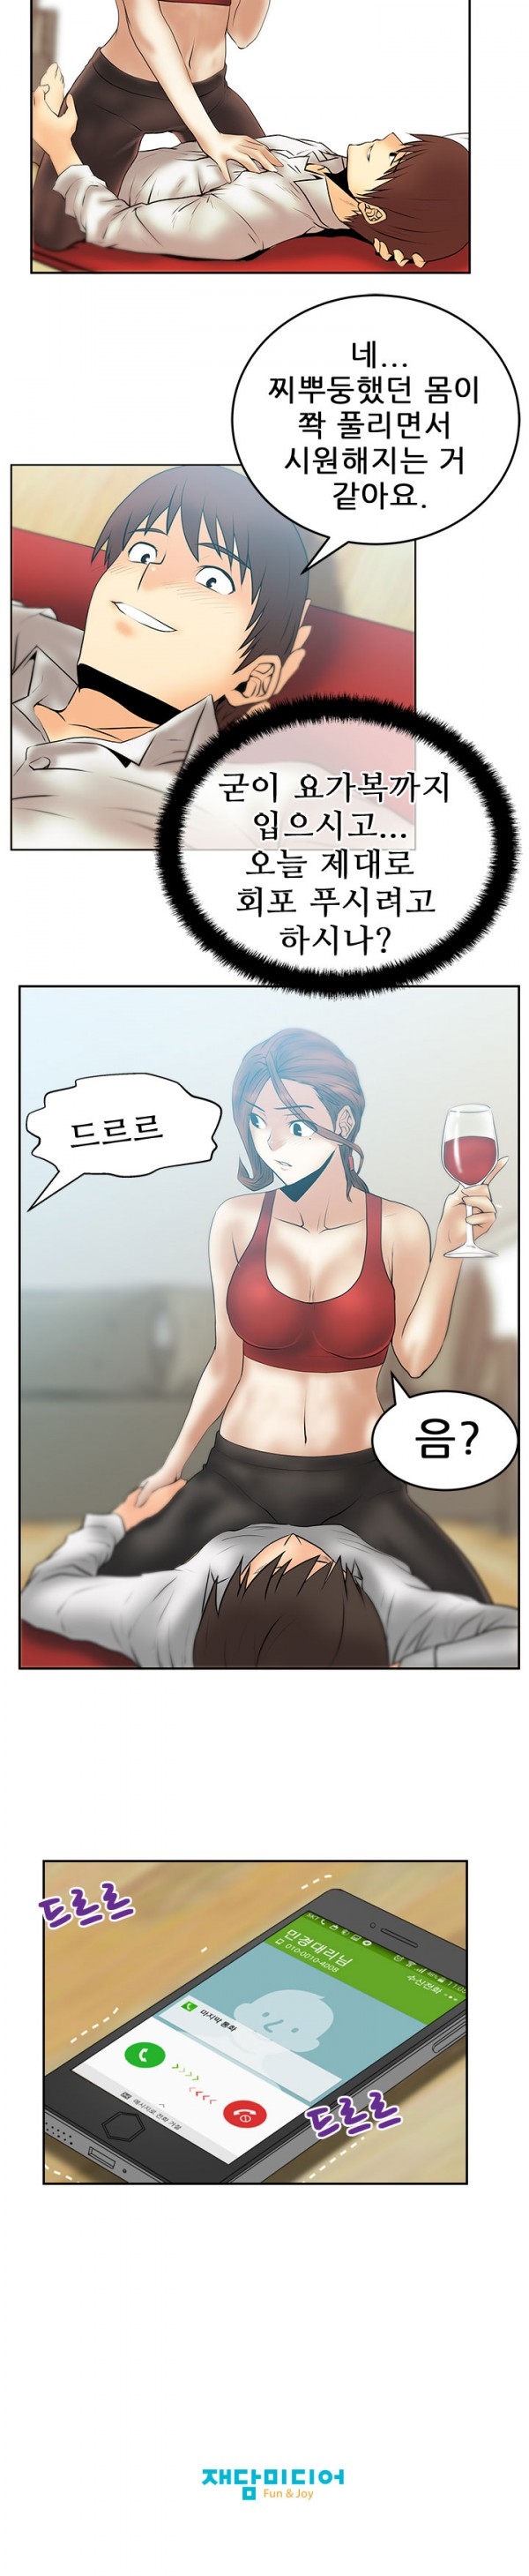 [Minu Mindu] Office Lady Vol. 1 [Korean] 326